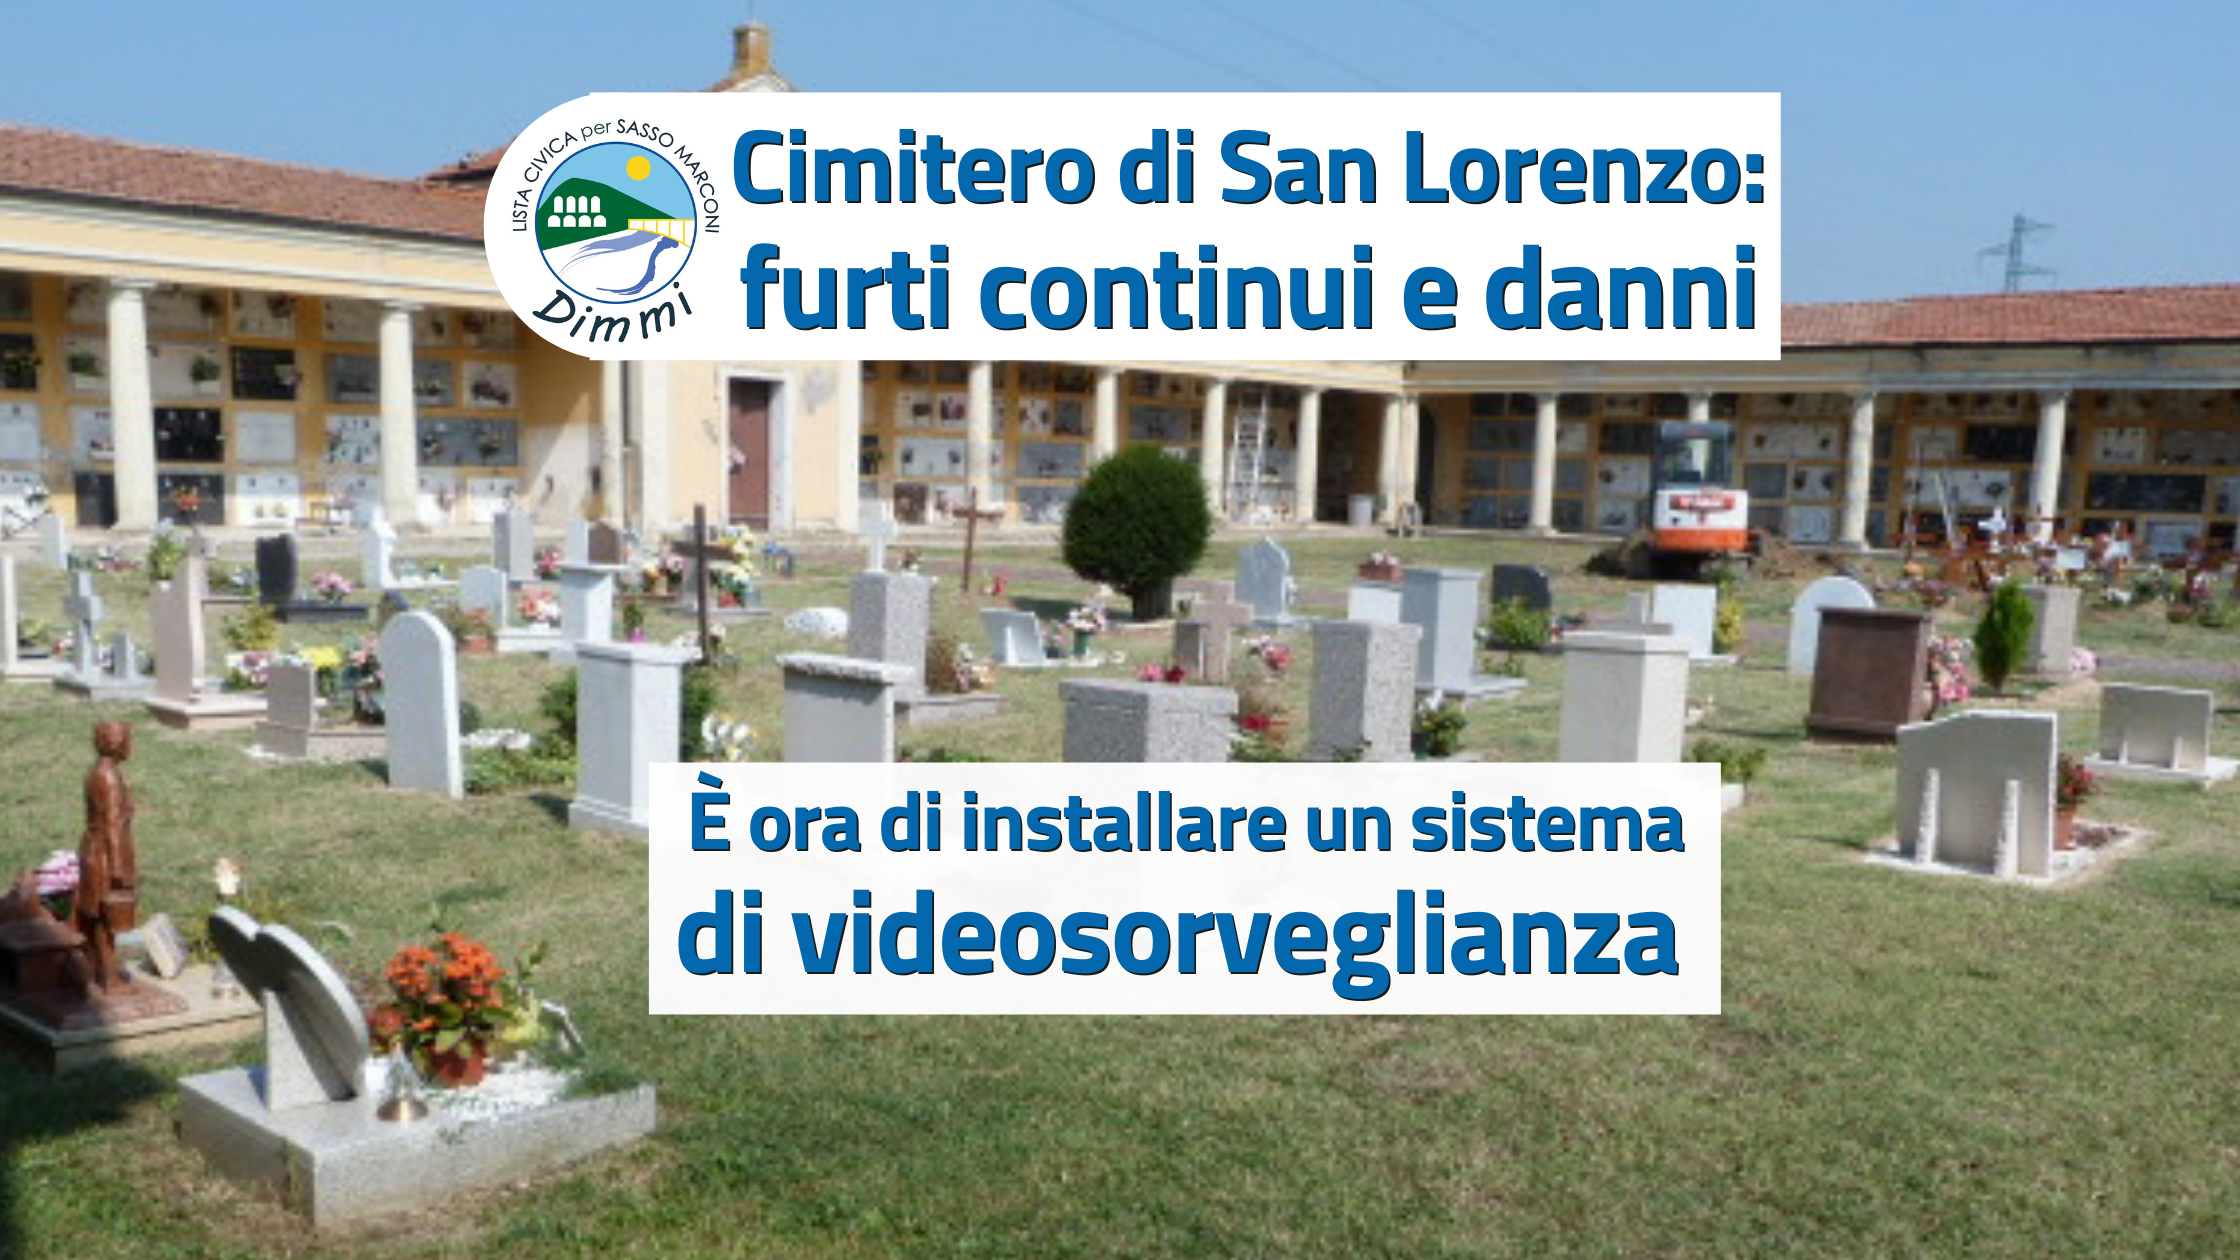 Al momento stai visualizzando Cimitero di San Lorenzo: videosorveglianza contro i furti e i vandalismi